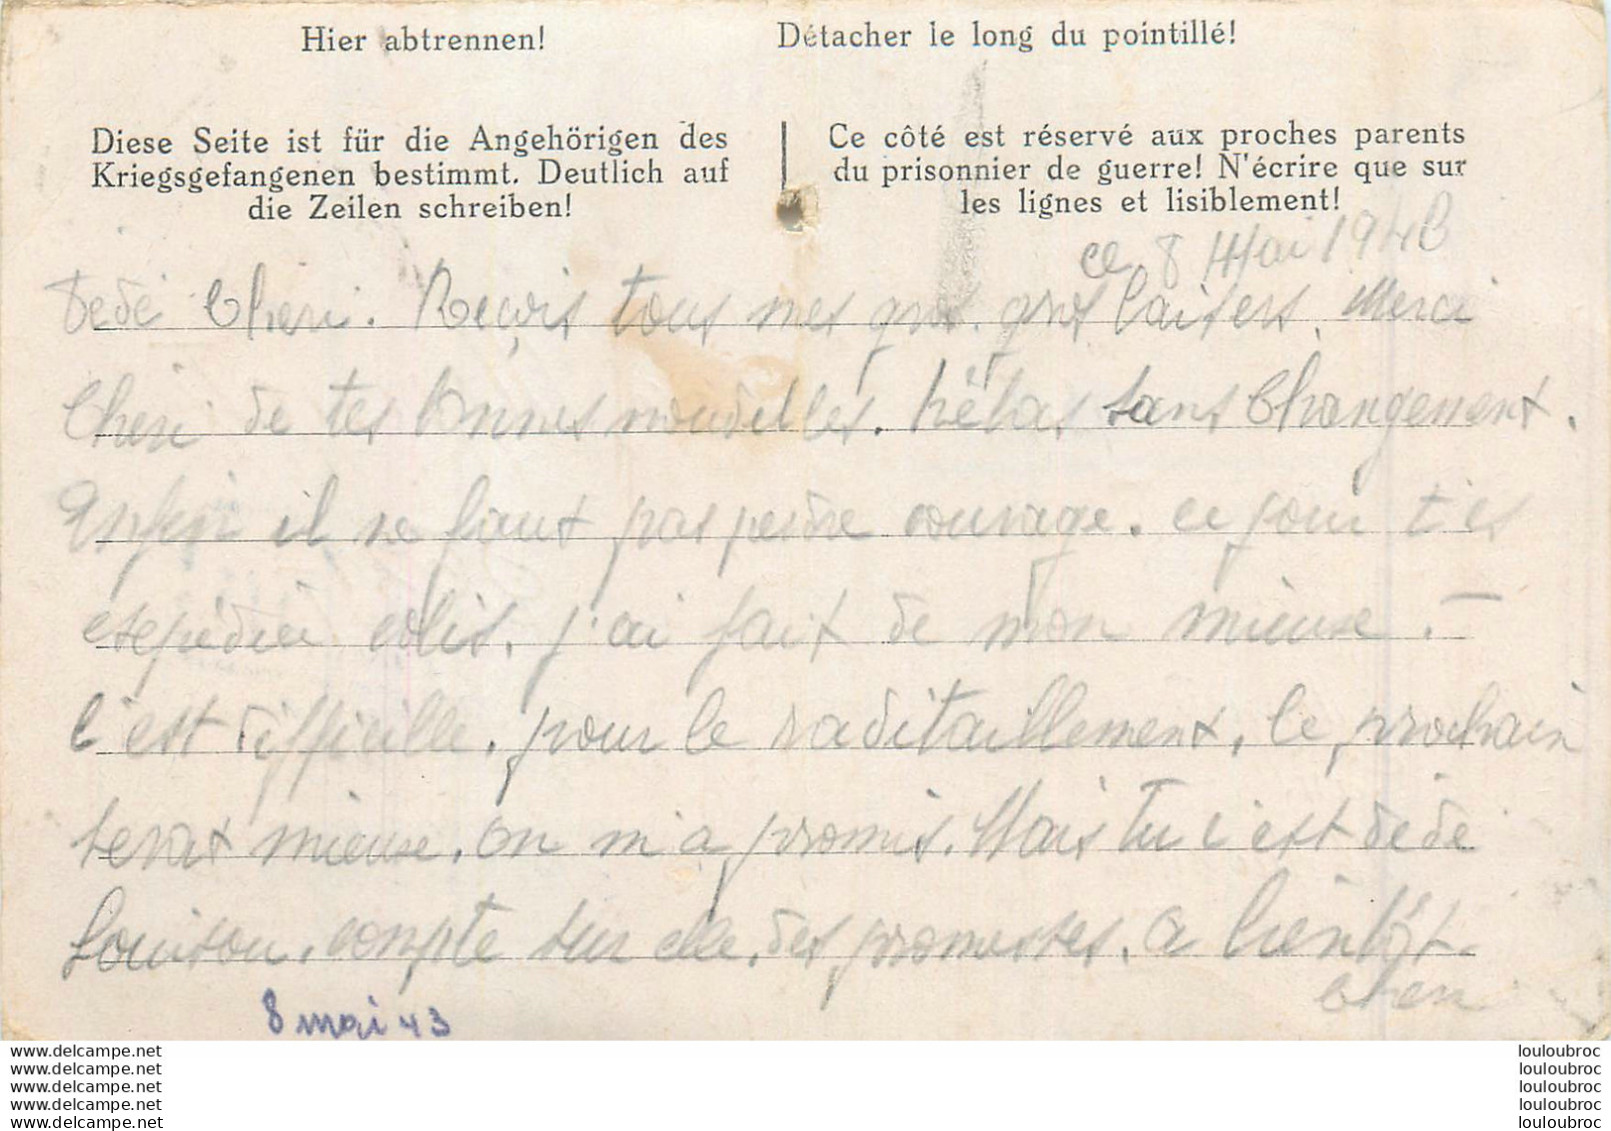 LETTRE PRISONNIER DE GUERRE STALAG IV F HARTMANNSDORF CHEMNITZ  1943 MONNET ANDRE N°36217 - Dokumente